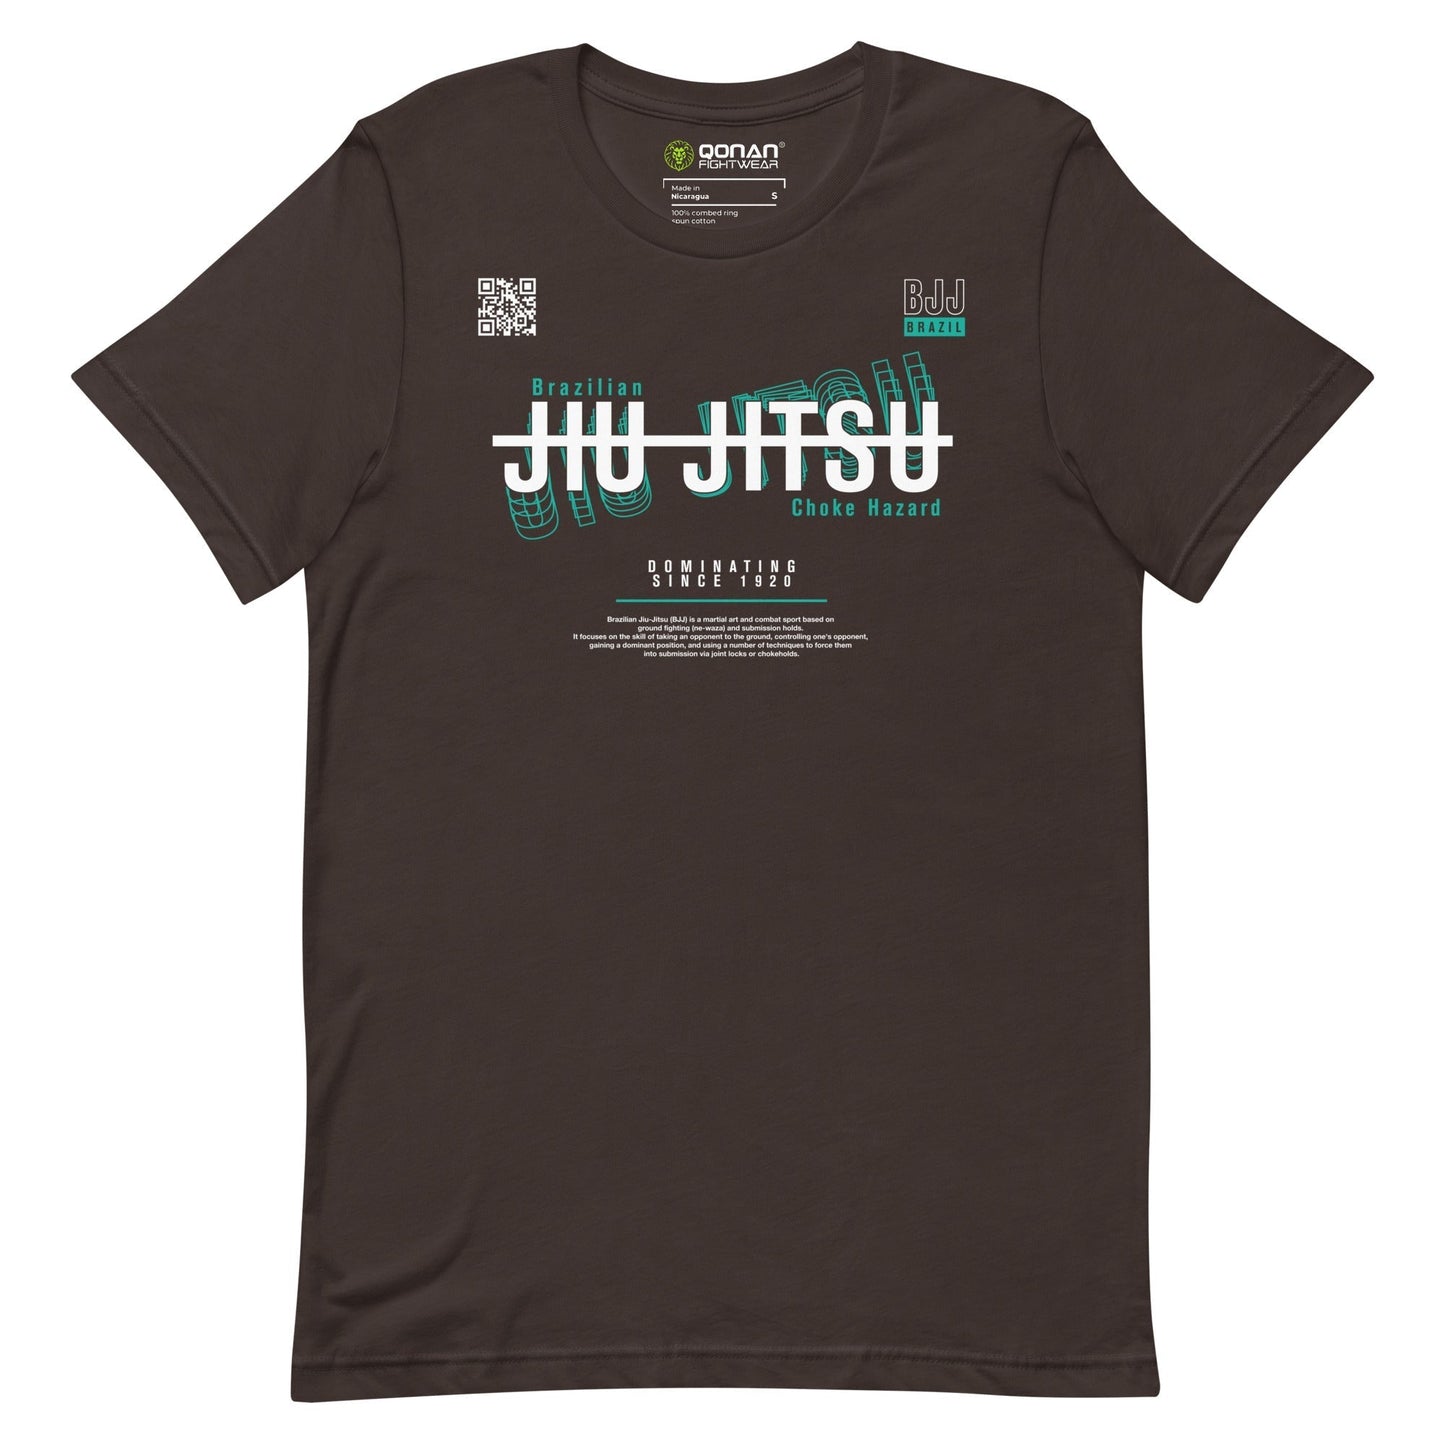 Jiu Jitsu Unisex t-shirt mod.76 Qonan Fightwear